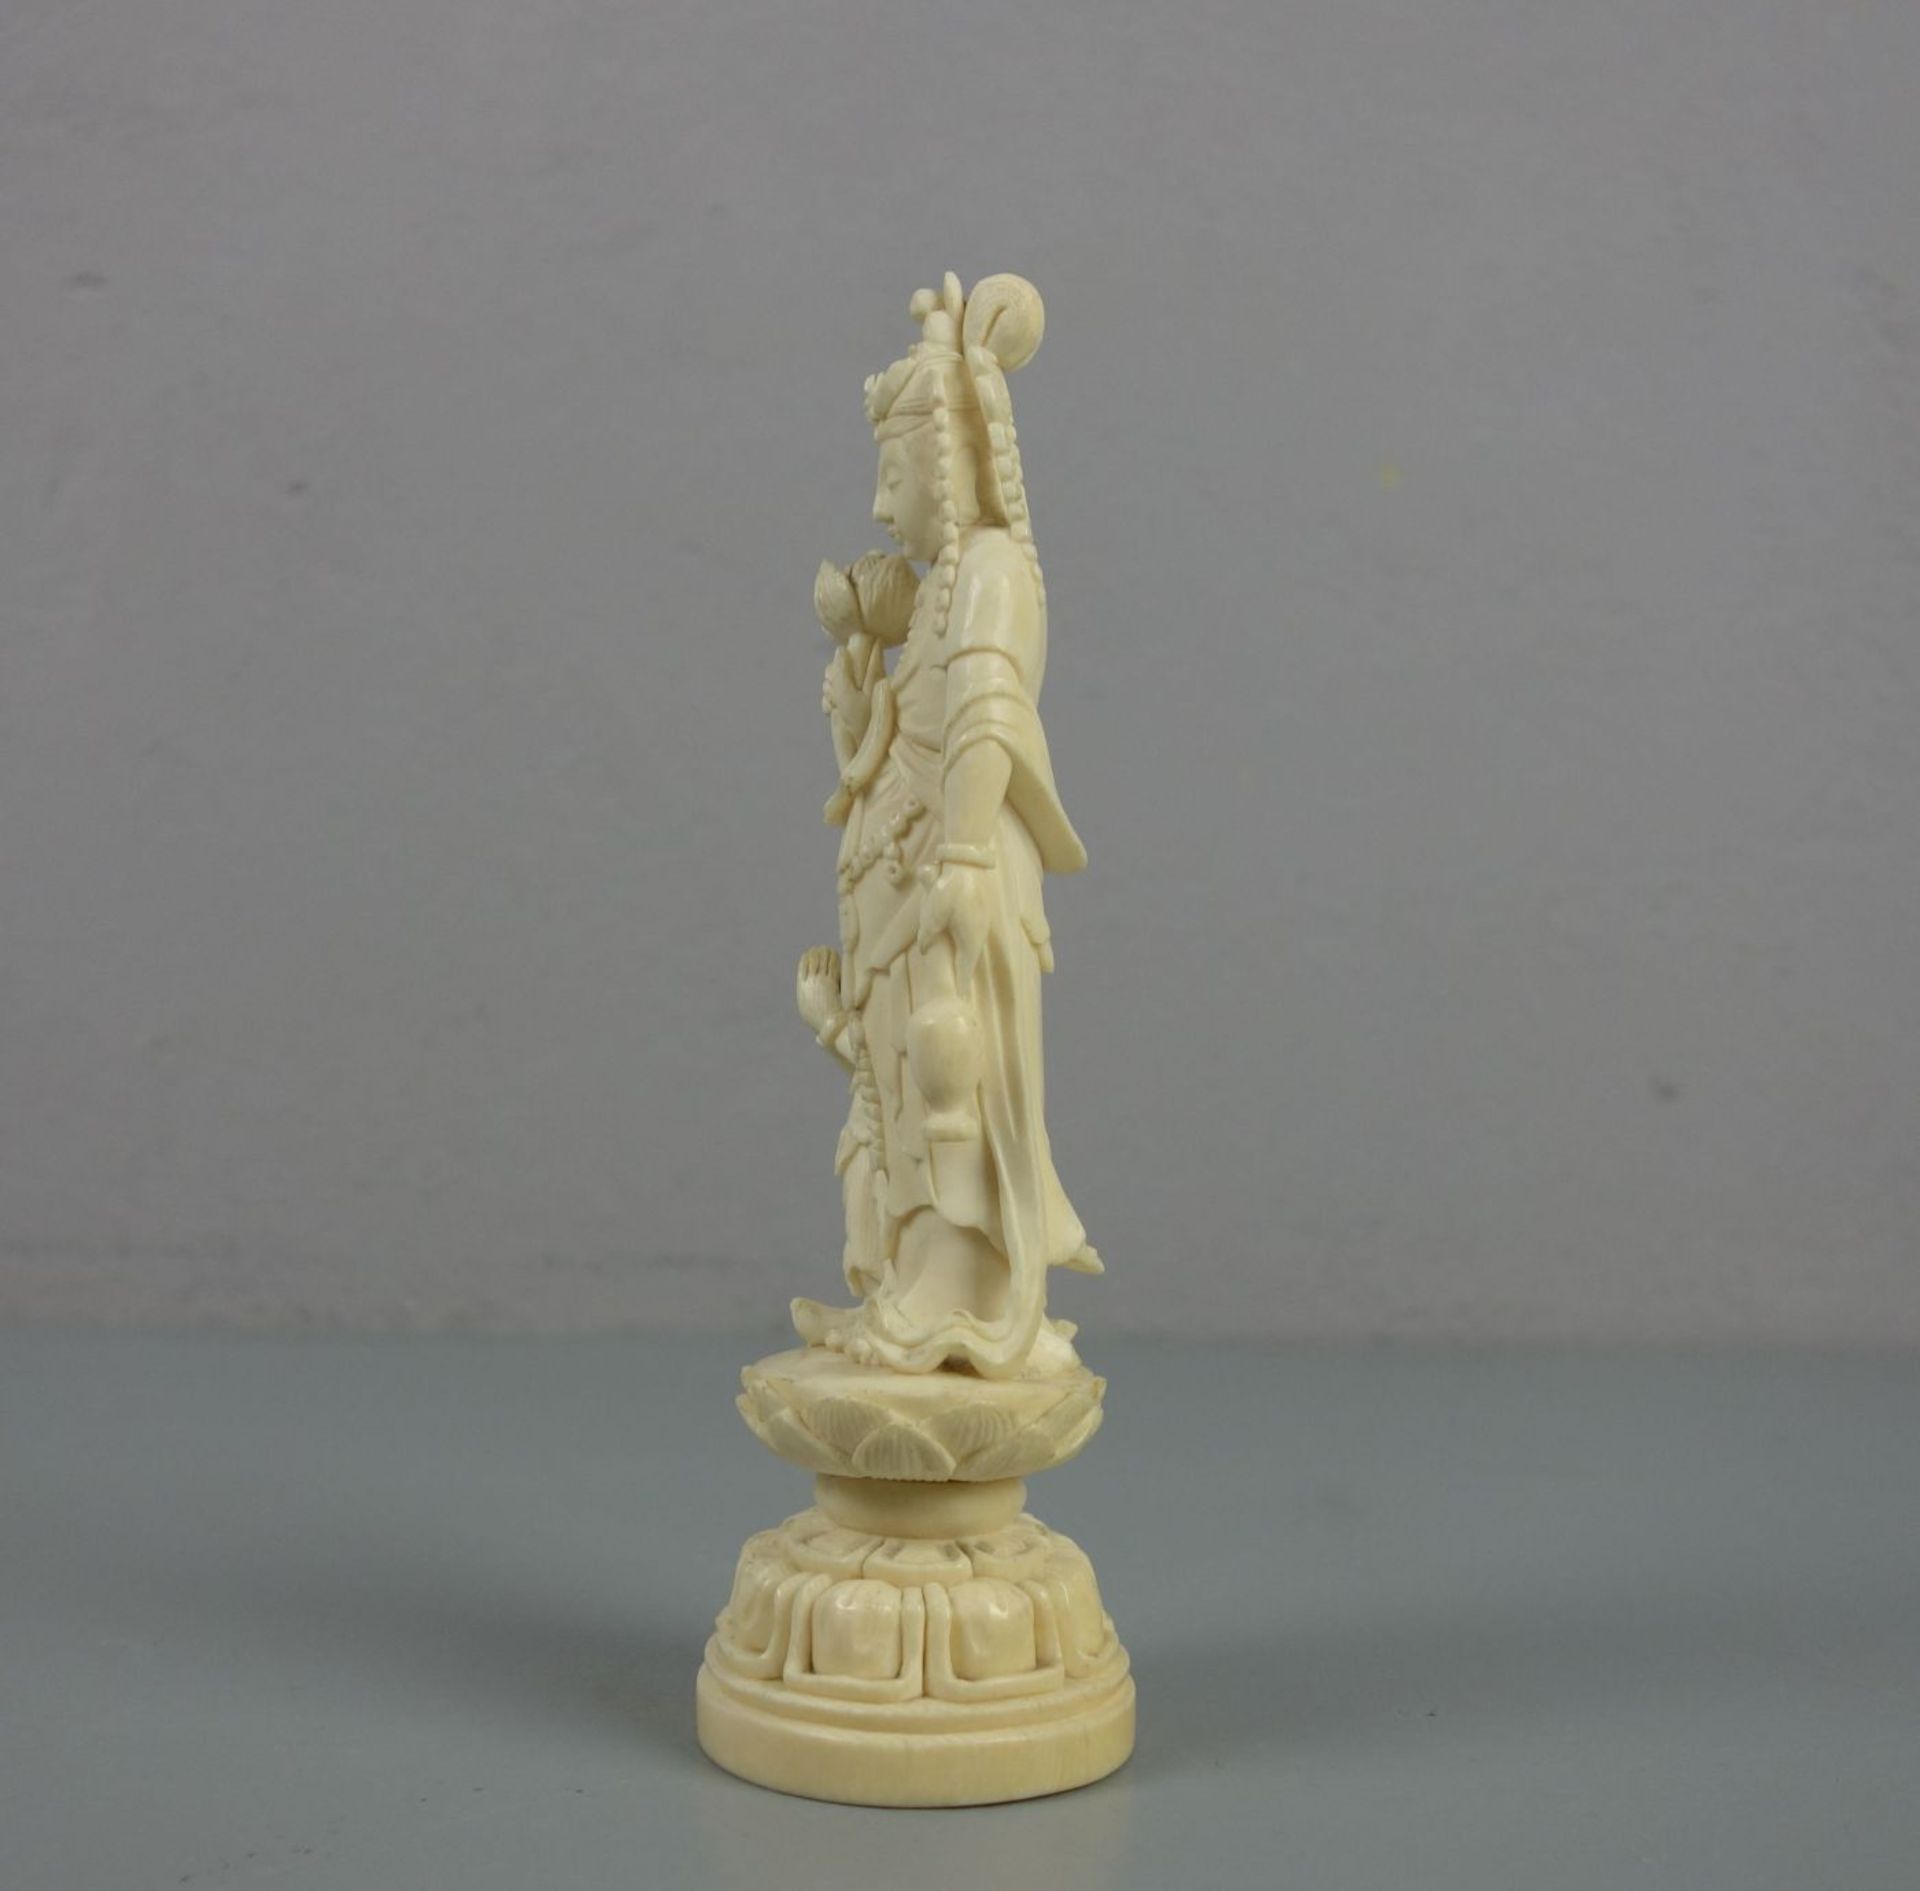 ELFENBEINFIGUR : "Guan Yin mit Assistenzfigur" / Okimono Figur / ivory figure, Asien. Elfenbein, - Bild 4 aus 5